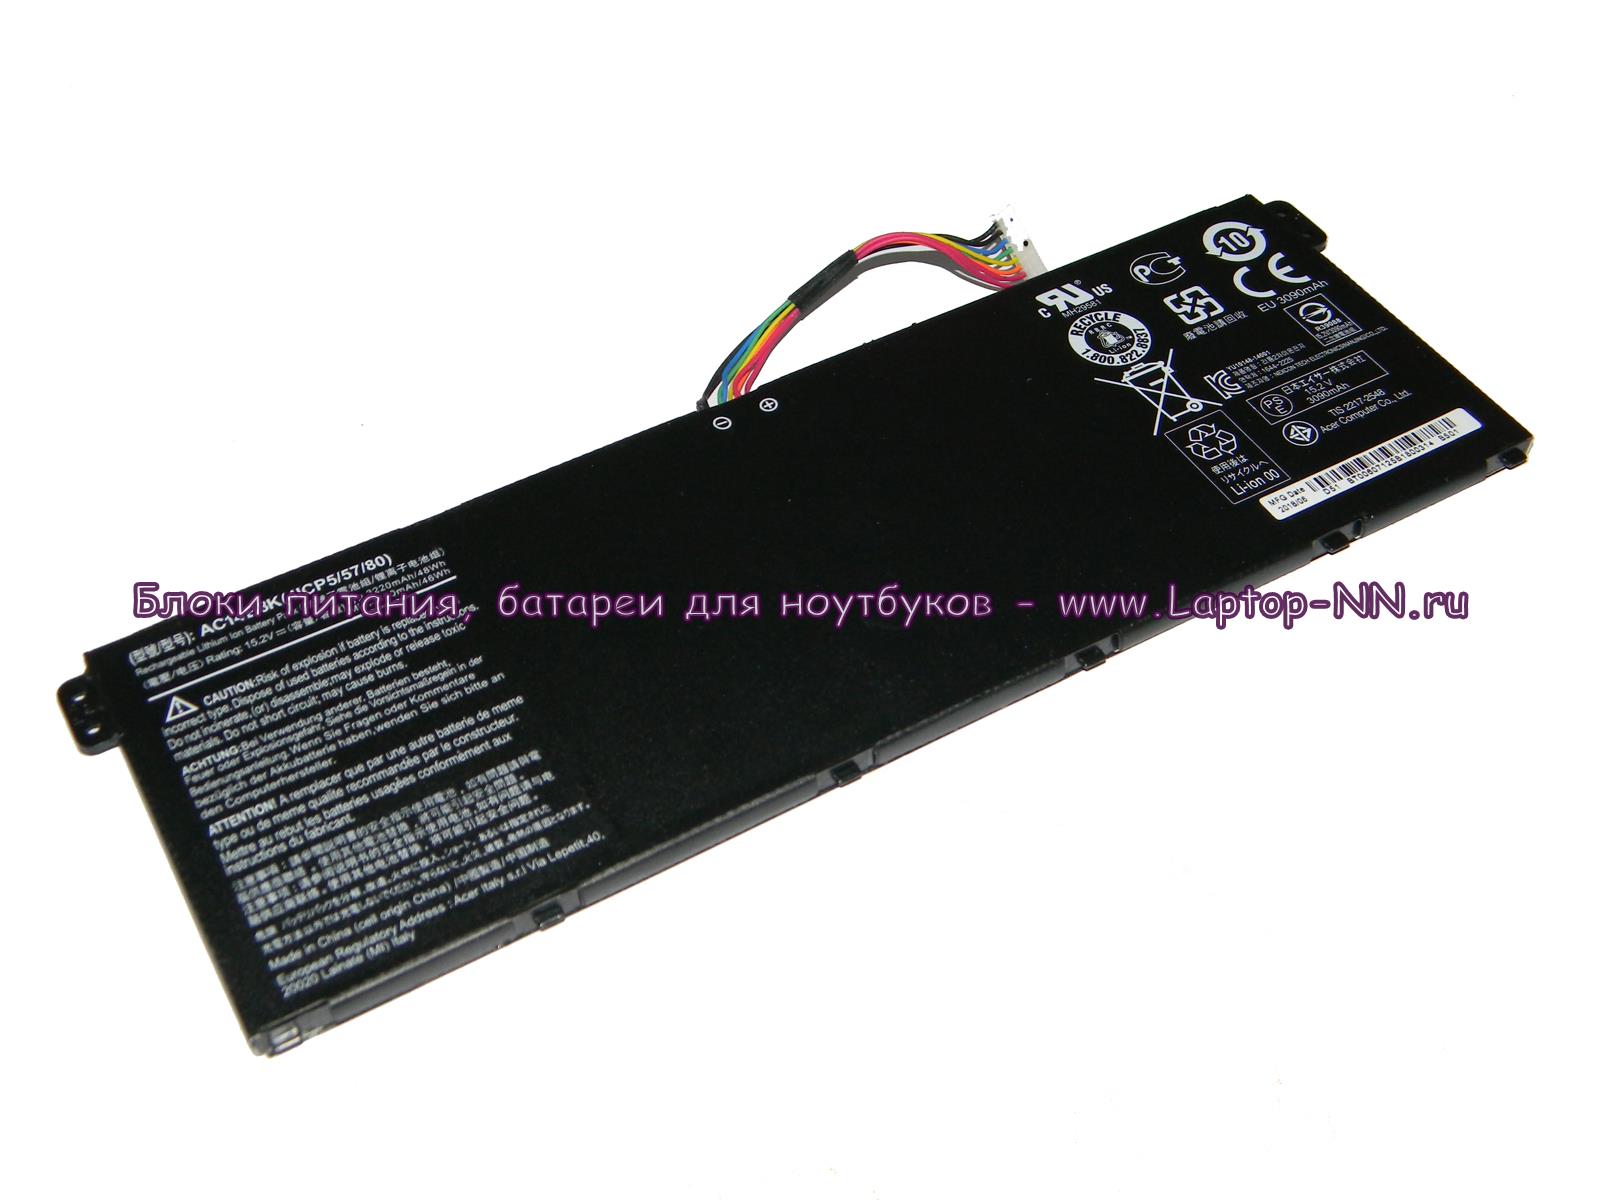 Купить аккумуляторную батарею для ноутбука Acer (AC14B3K) 15.2v 4400mAh в Нижнем Новгороде